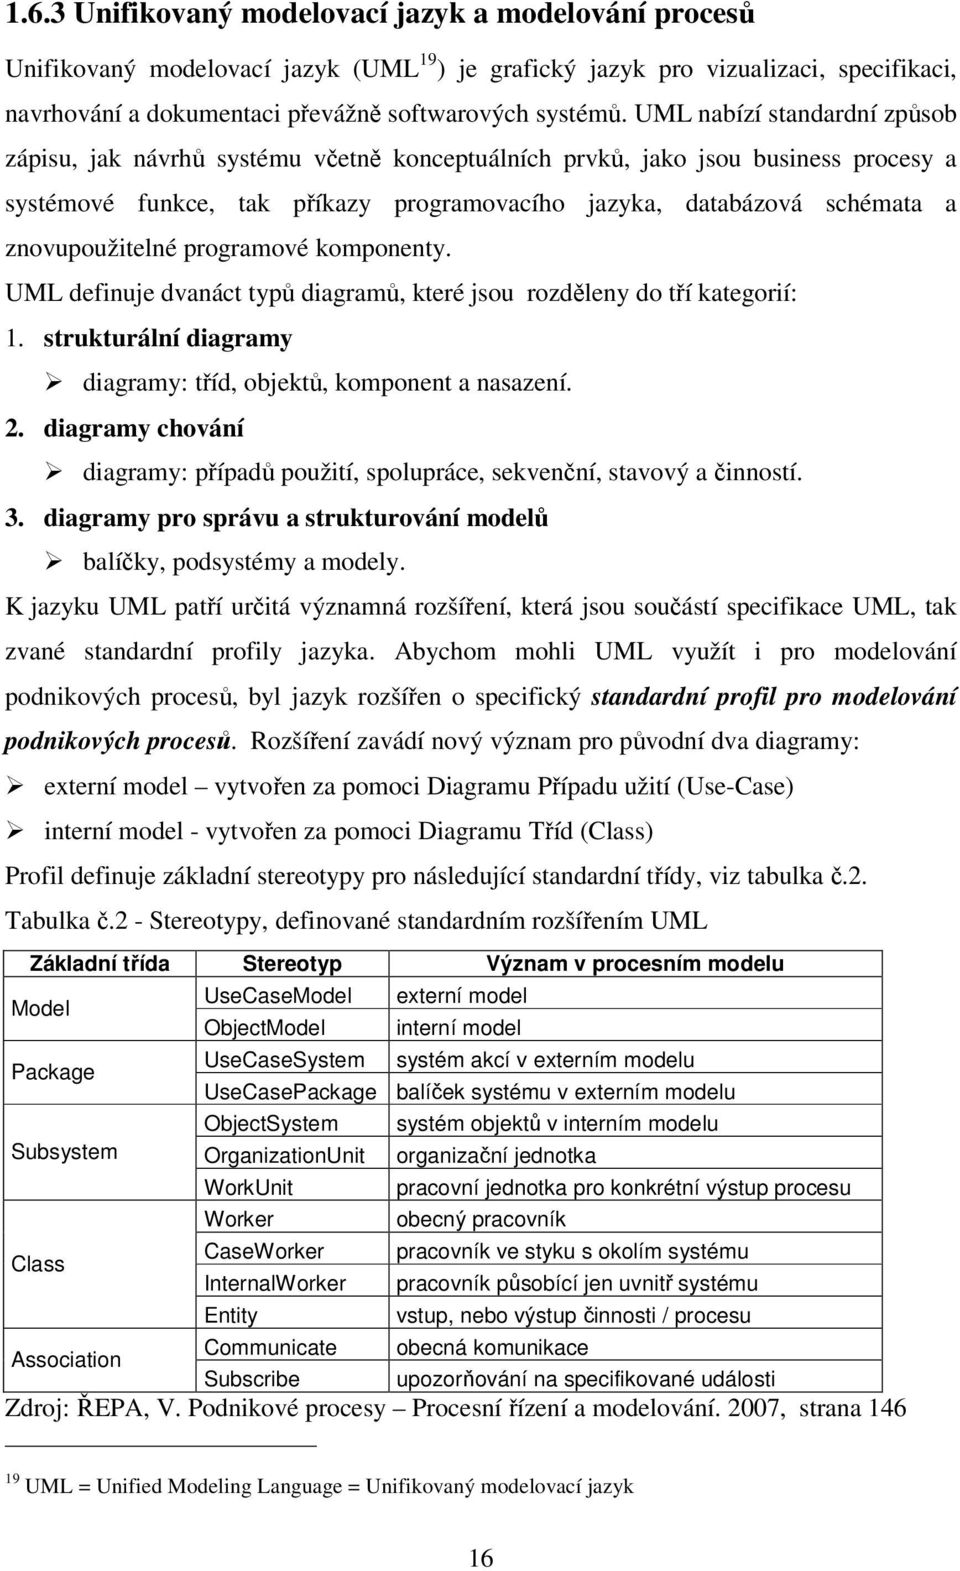 znovupoužitelné programové komponenty. UML definuje dvanáct typů diagramů, které jsou rozděleny do tří kategorií: 1. strukturální diagramy diagramy: tříd, objektů, komponent a nasazení. 2.